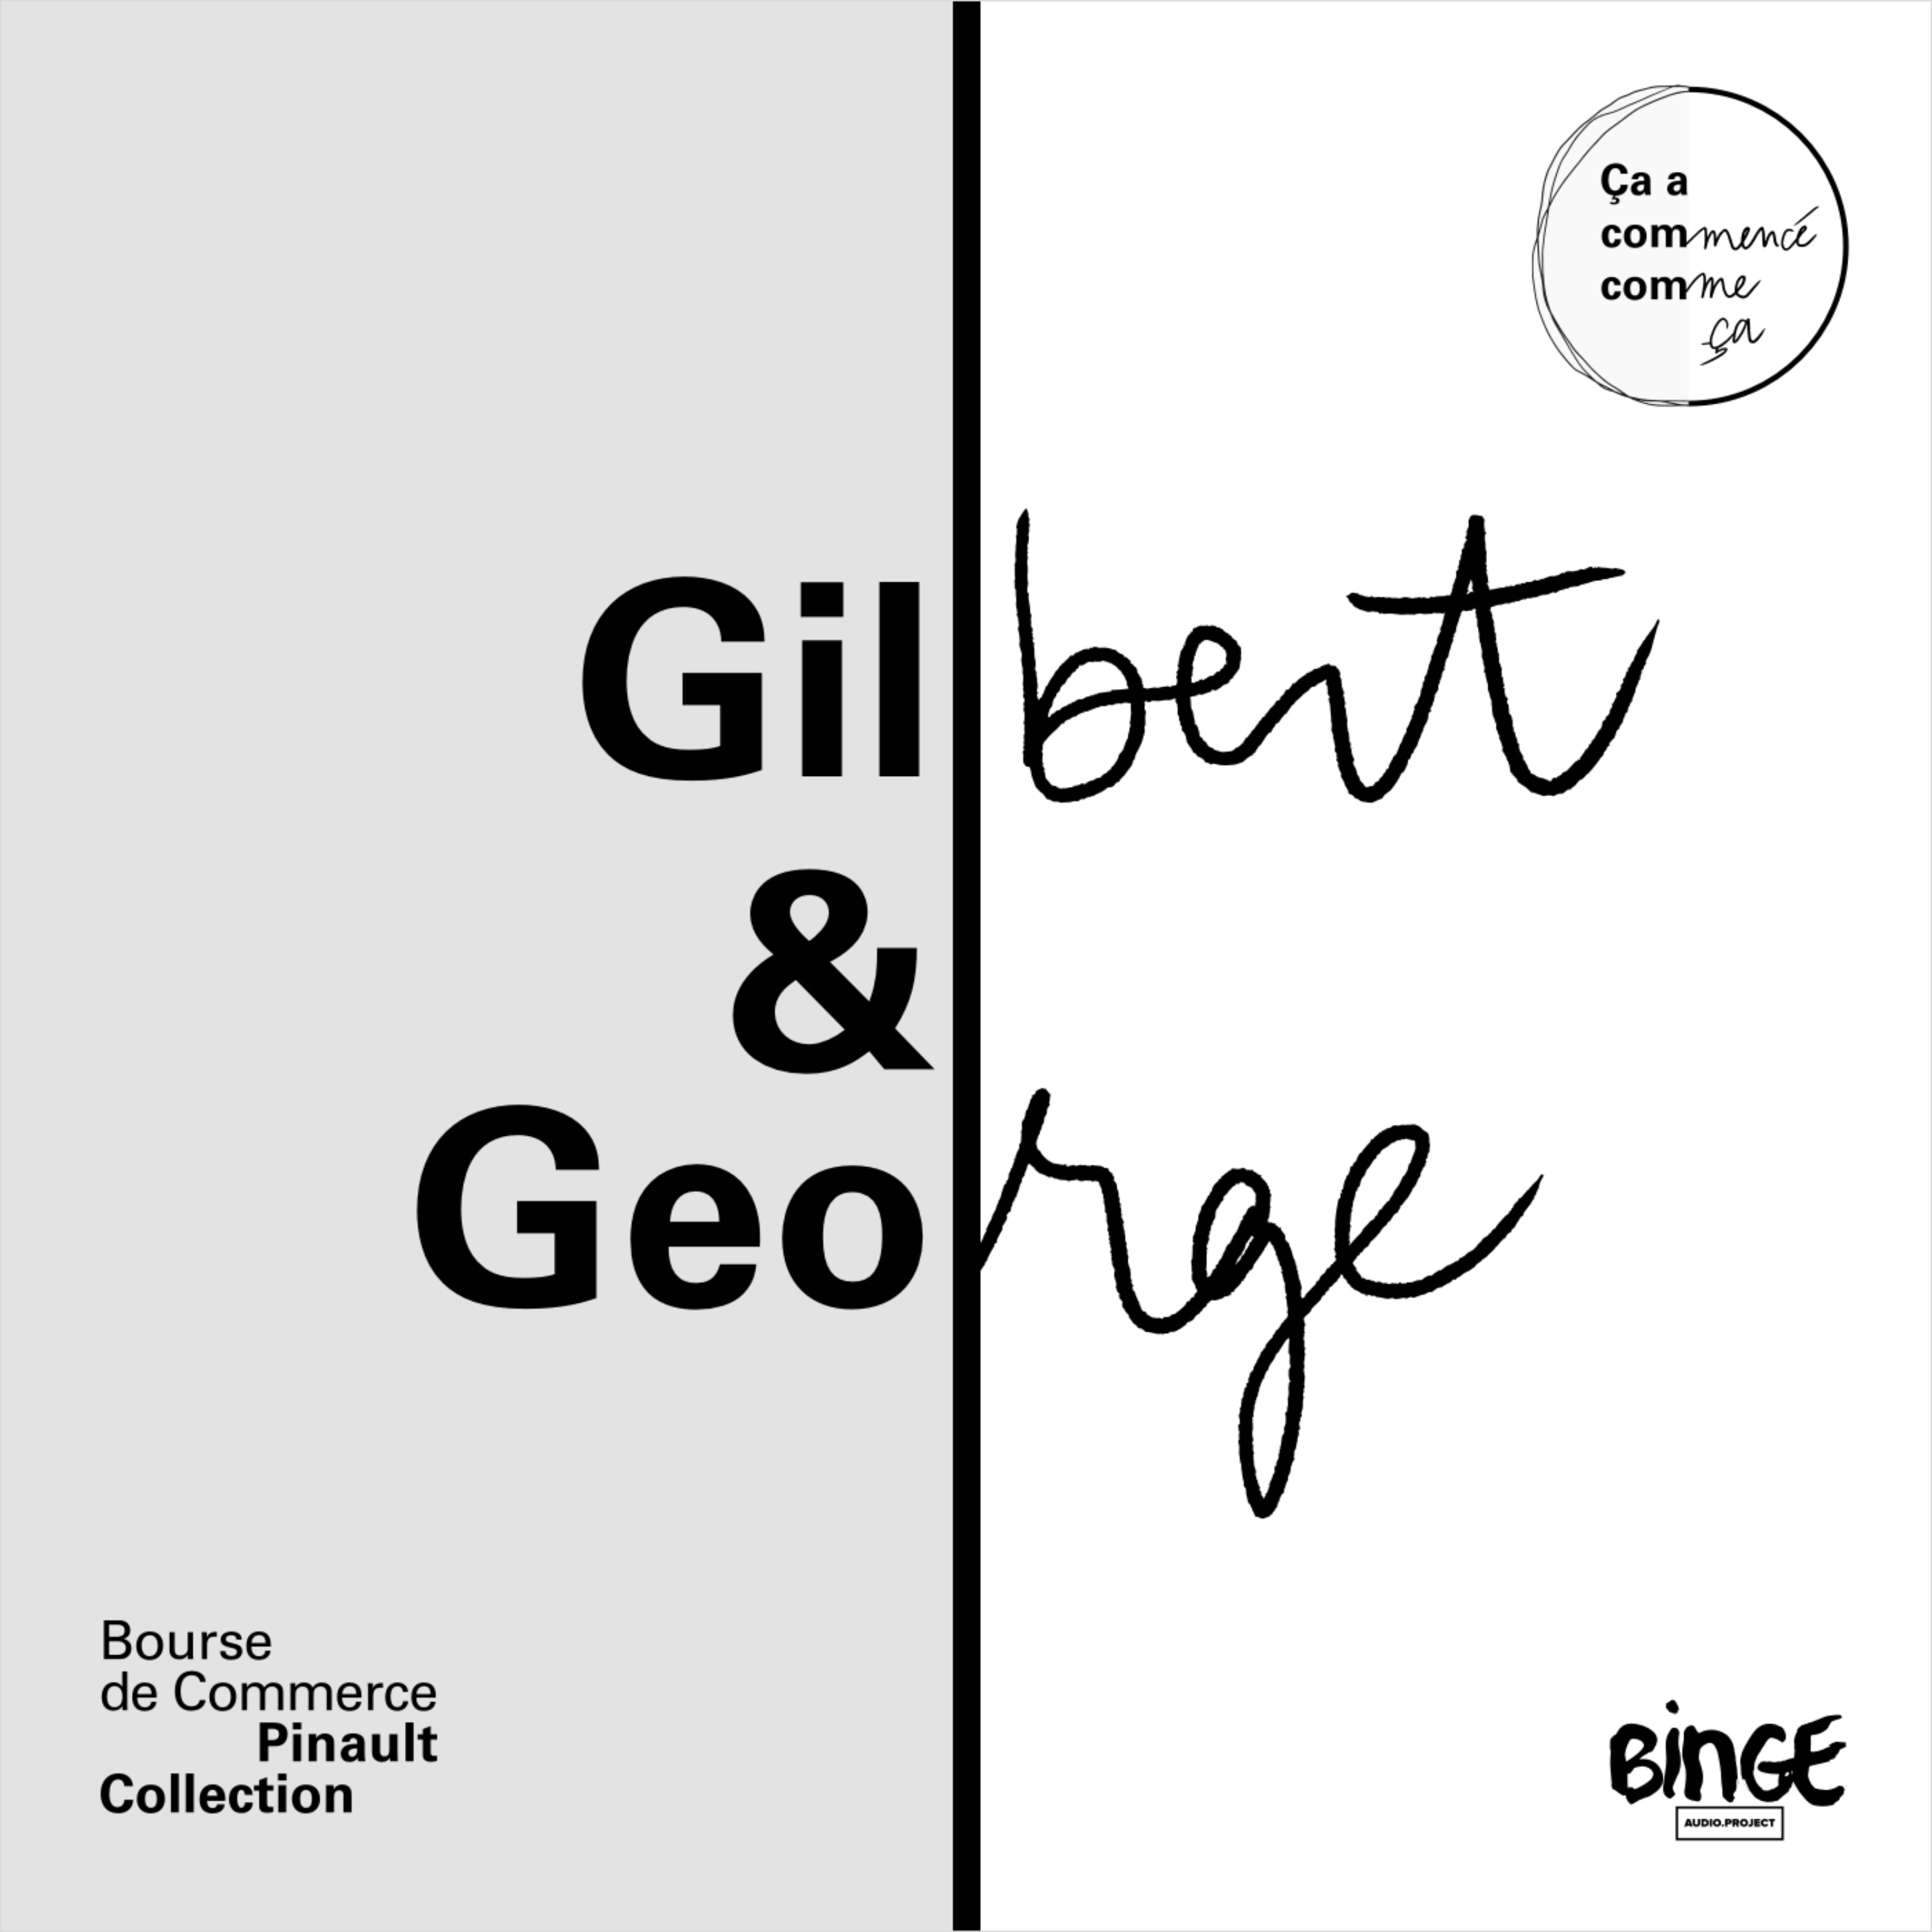 Gilbert & George - Gentlemen contestataires